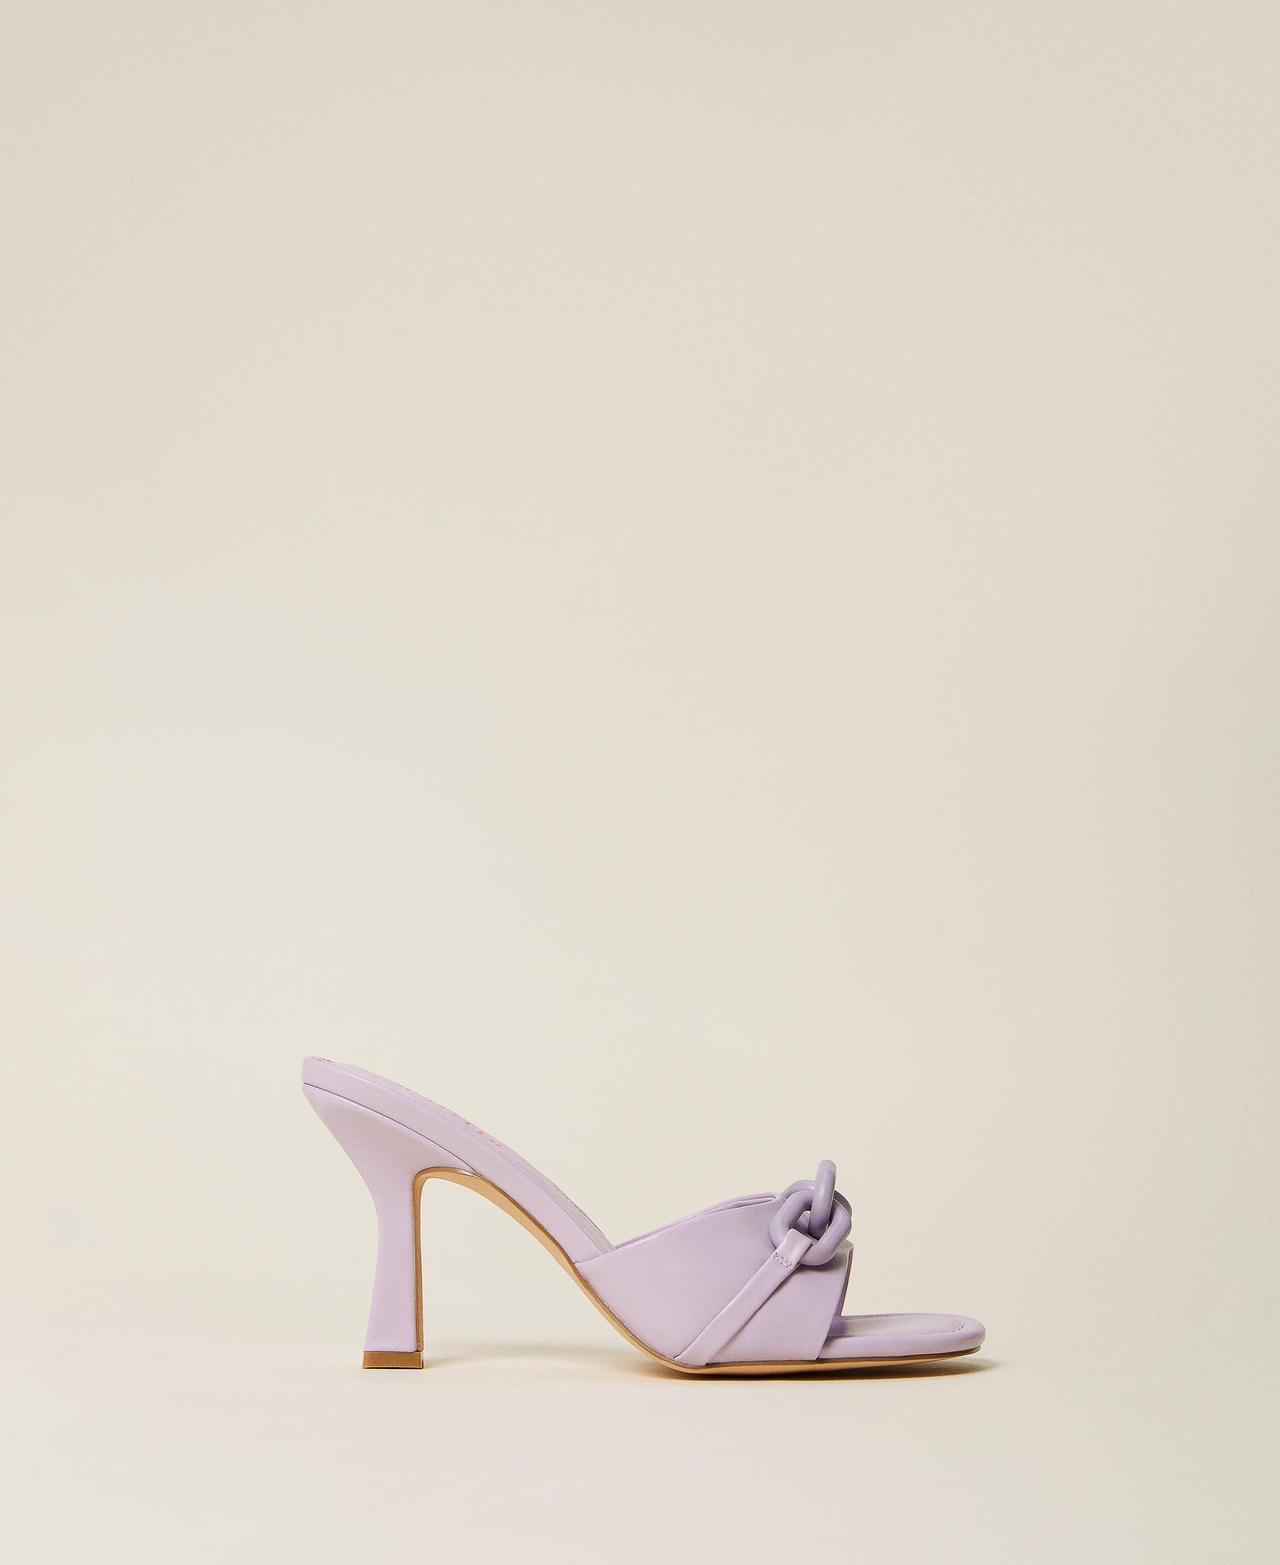 Sandales mules avec chaîne Violet « Pastel Lilac » Femme 221ACT10E-03